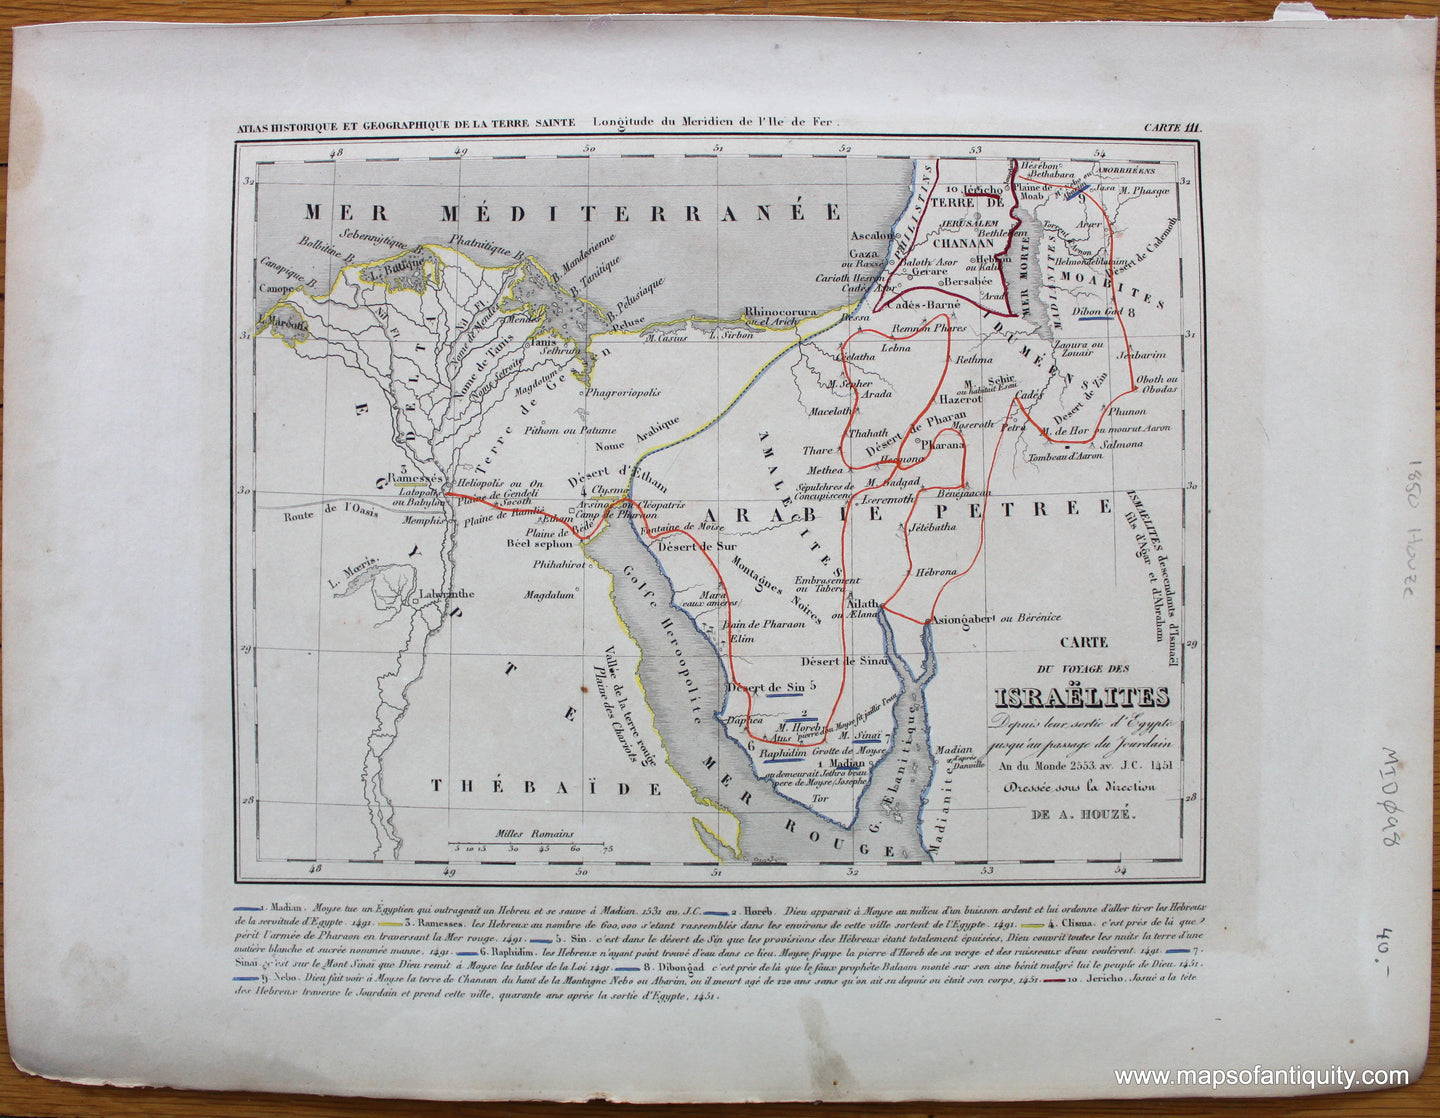 Antique-Hand-Colored-Map-Carte-du-Voyage-des-Israelites-Depuis-leur-Sortie-d'Egype-jusqu'au-Passage-du-Jourdain-An-du-Monde-2553-AV-J.C.-1451-Middle-East--1850-Houze-Maps-Of-Antiquity